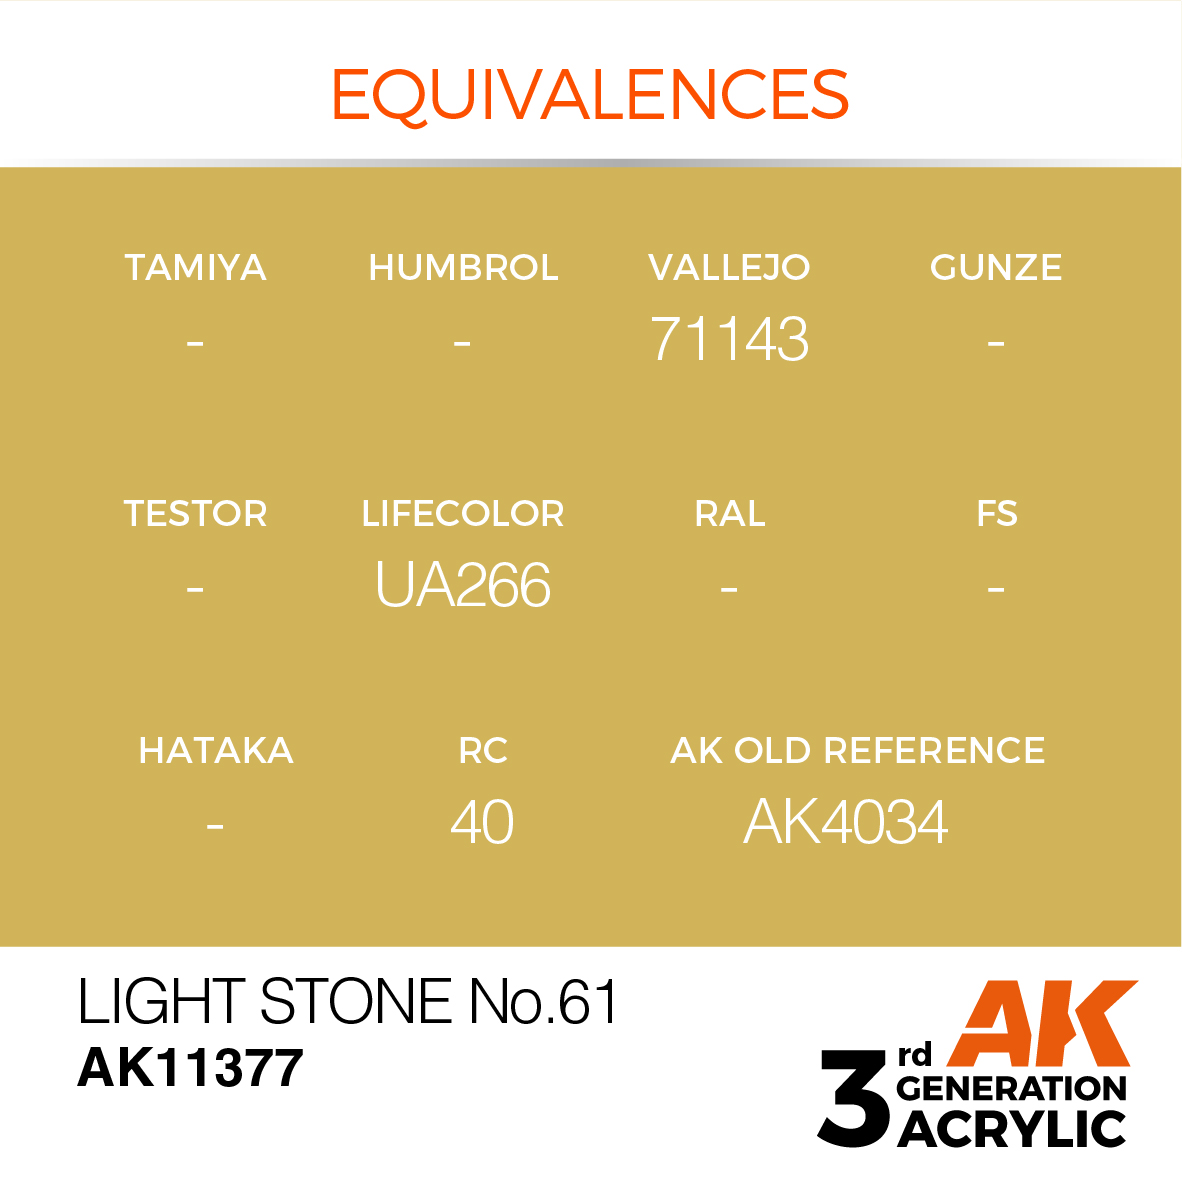 Light Stone No.61 – AFV